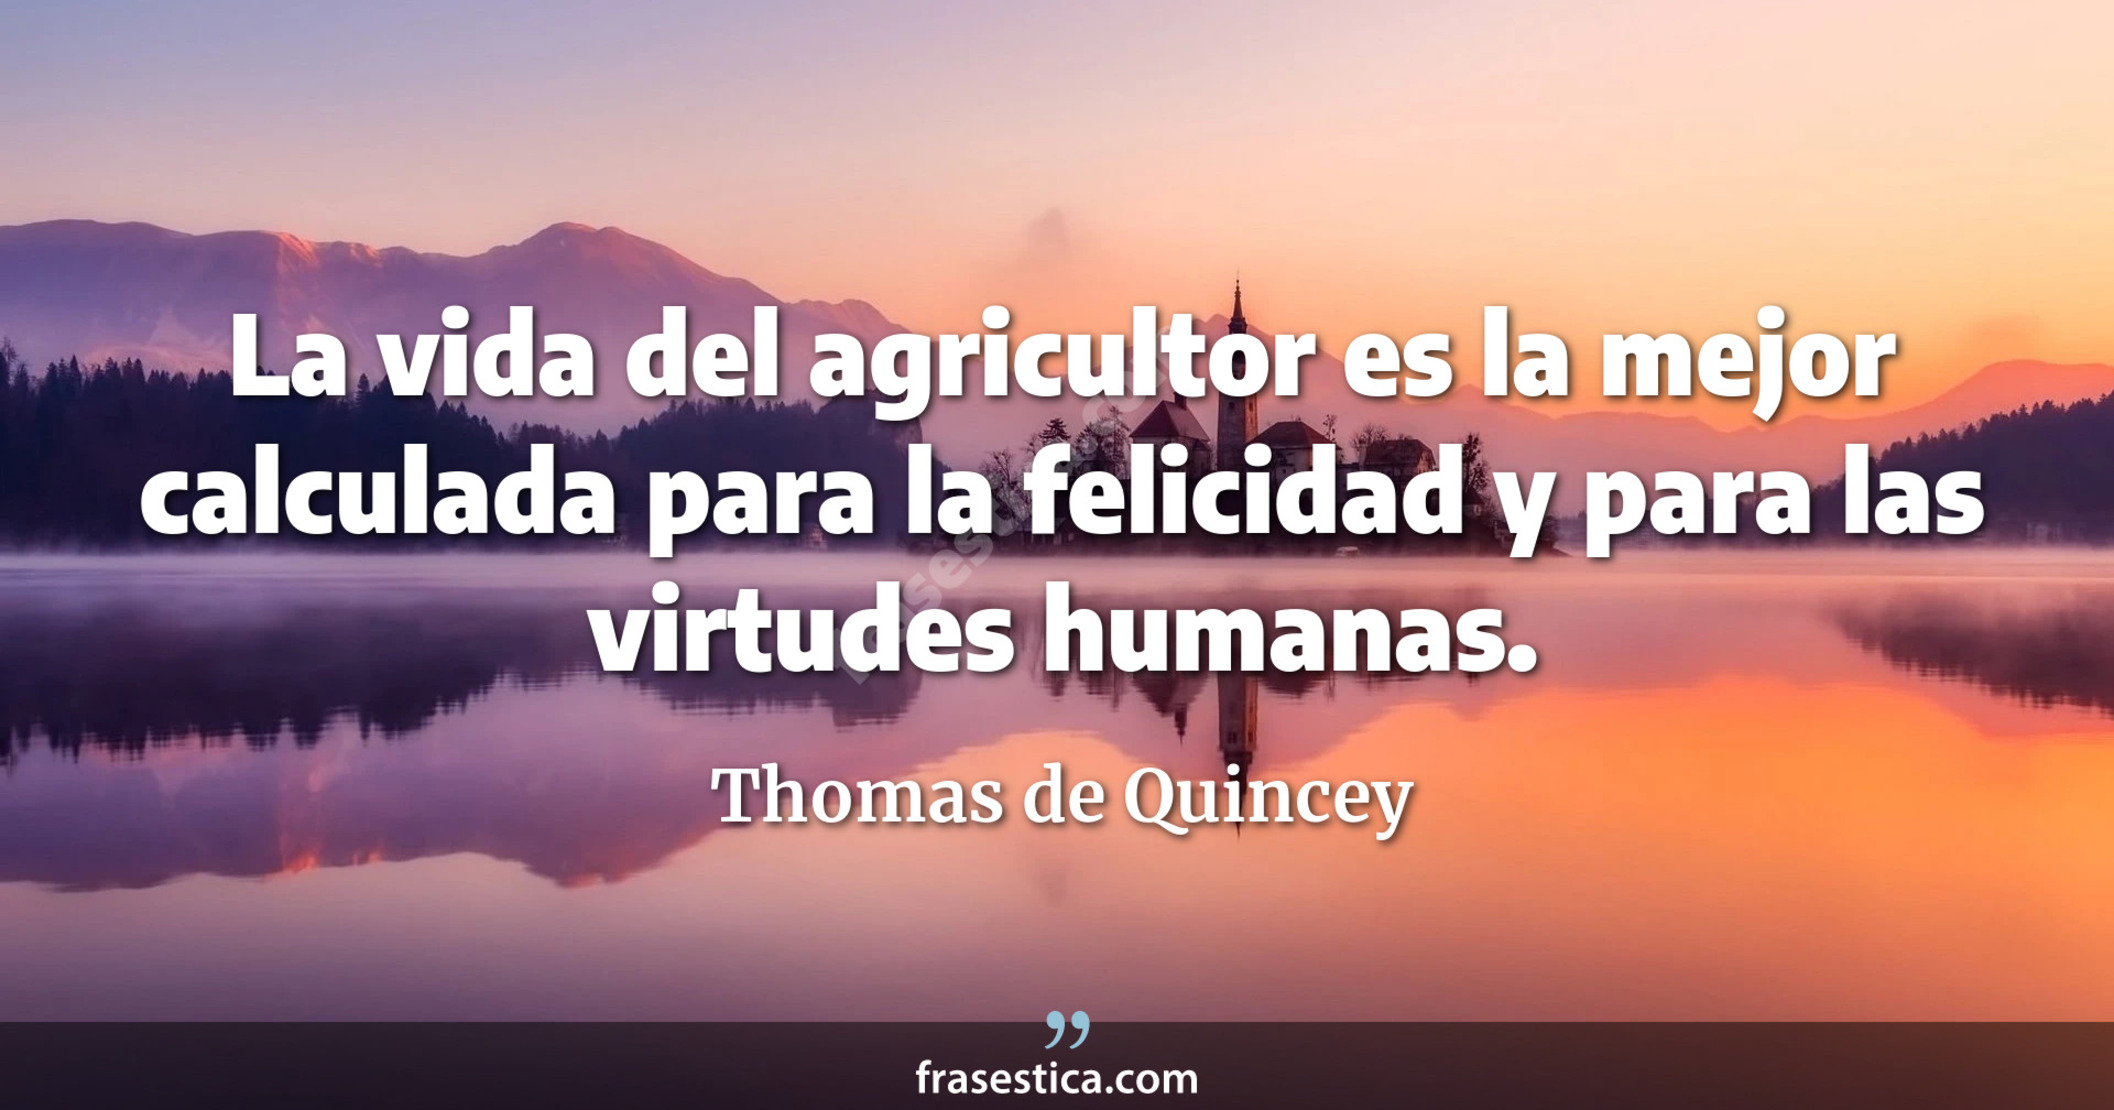 La vida del agricultor es la mejor calculada para la felicidad y para las virtudes humanas. - Thomas de Quincey